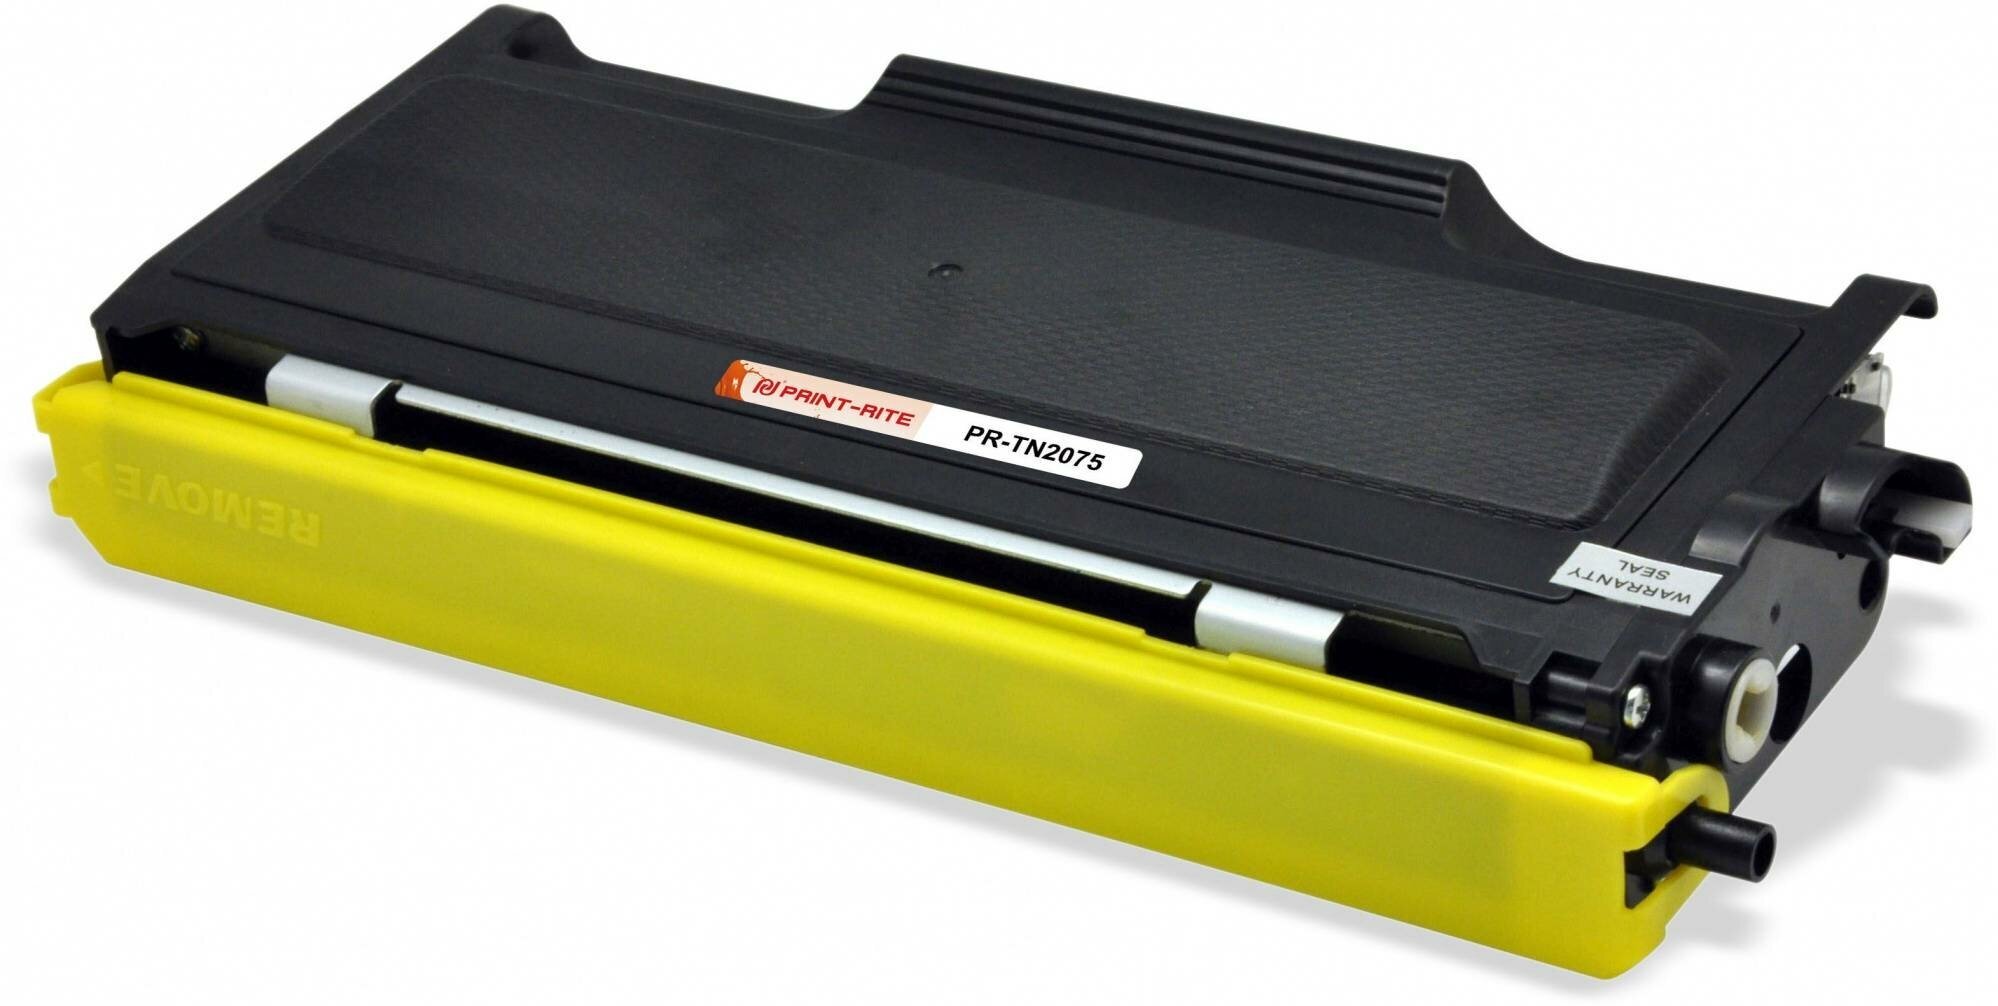 Картридж для лазерного принтера Print-Rite TFB697BPU1J (PR-TN2075) черный, совместимый